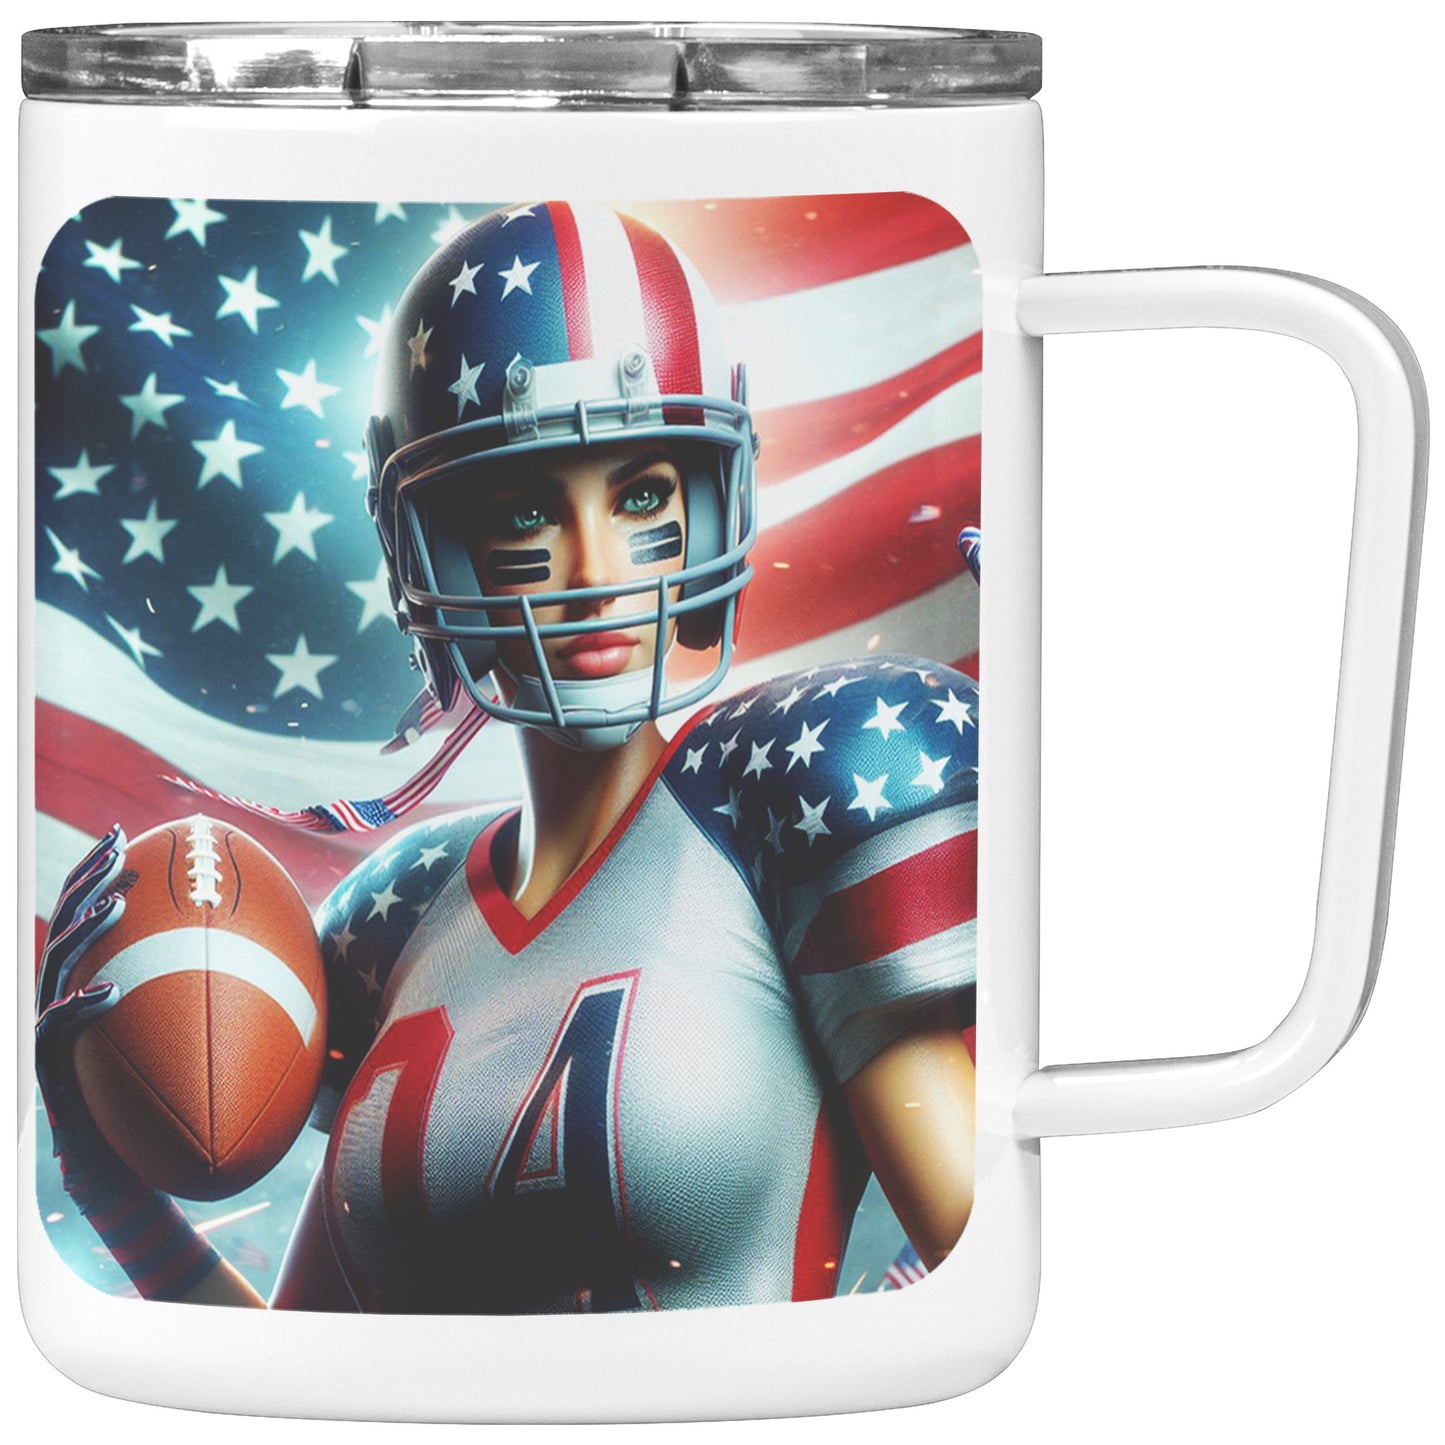 Woman Football Player - Insulated Coffee Mug #40